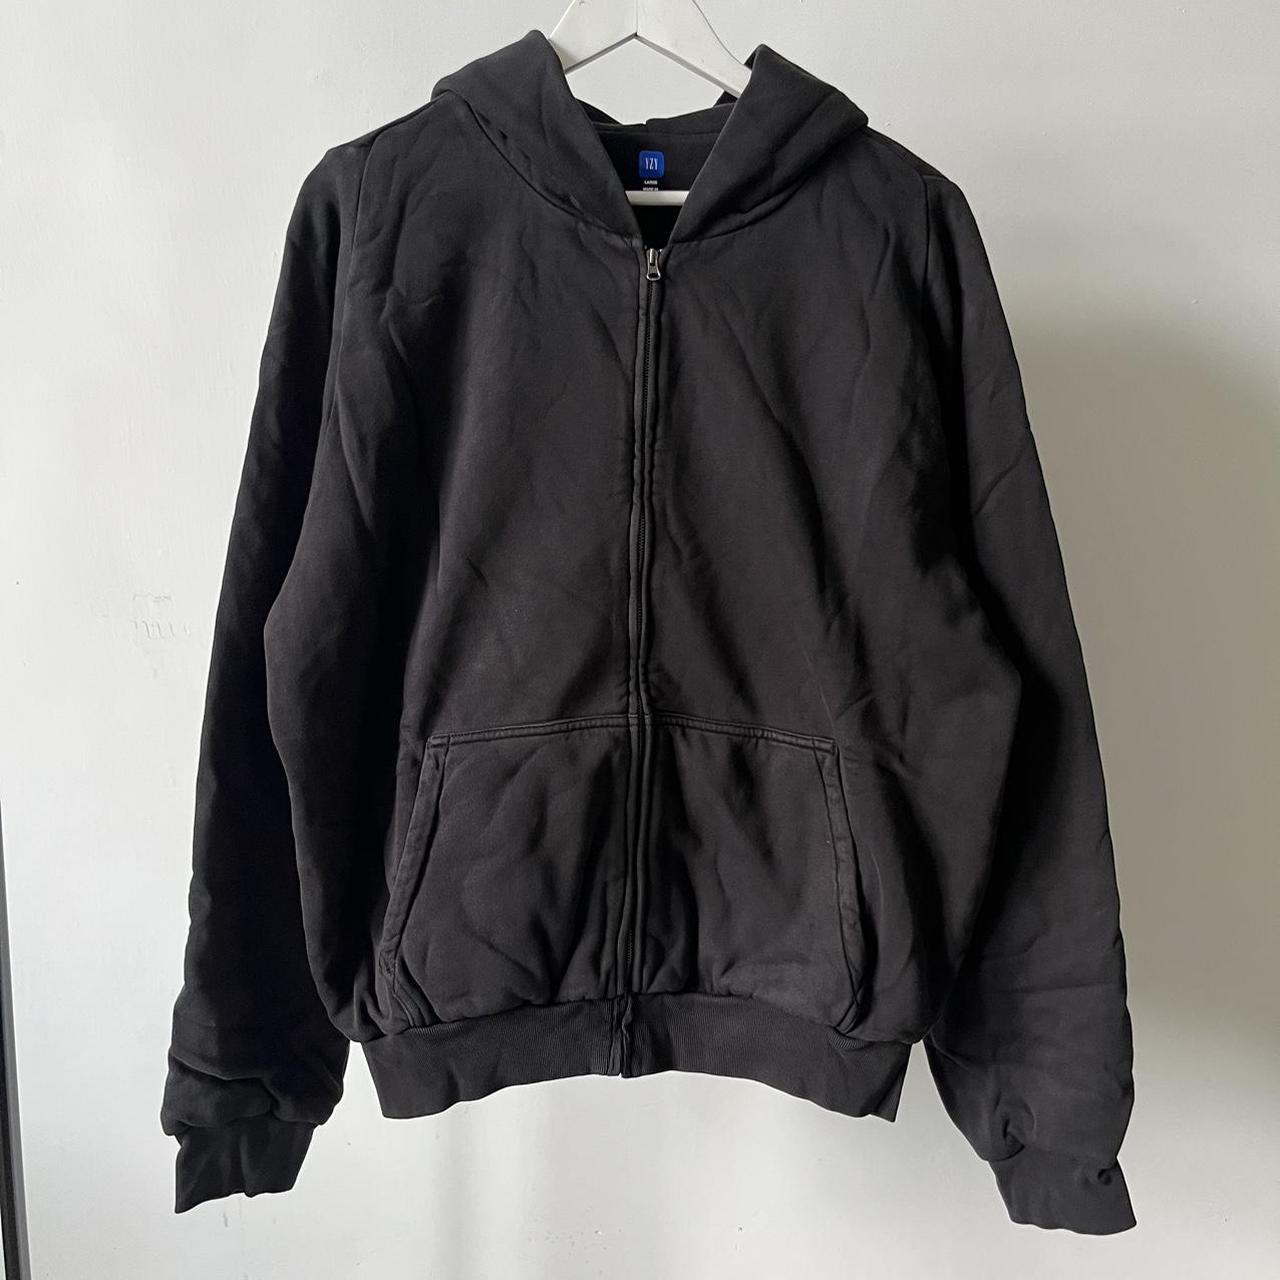 Yeezy Gap unrealised zip up hoodie in black. Perfect